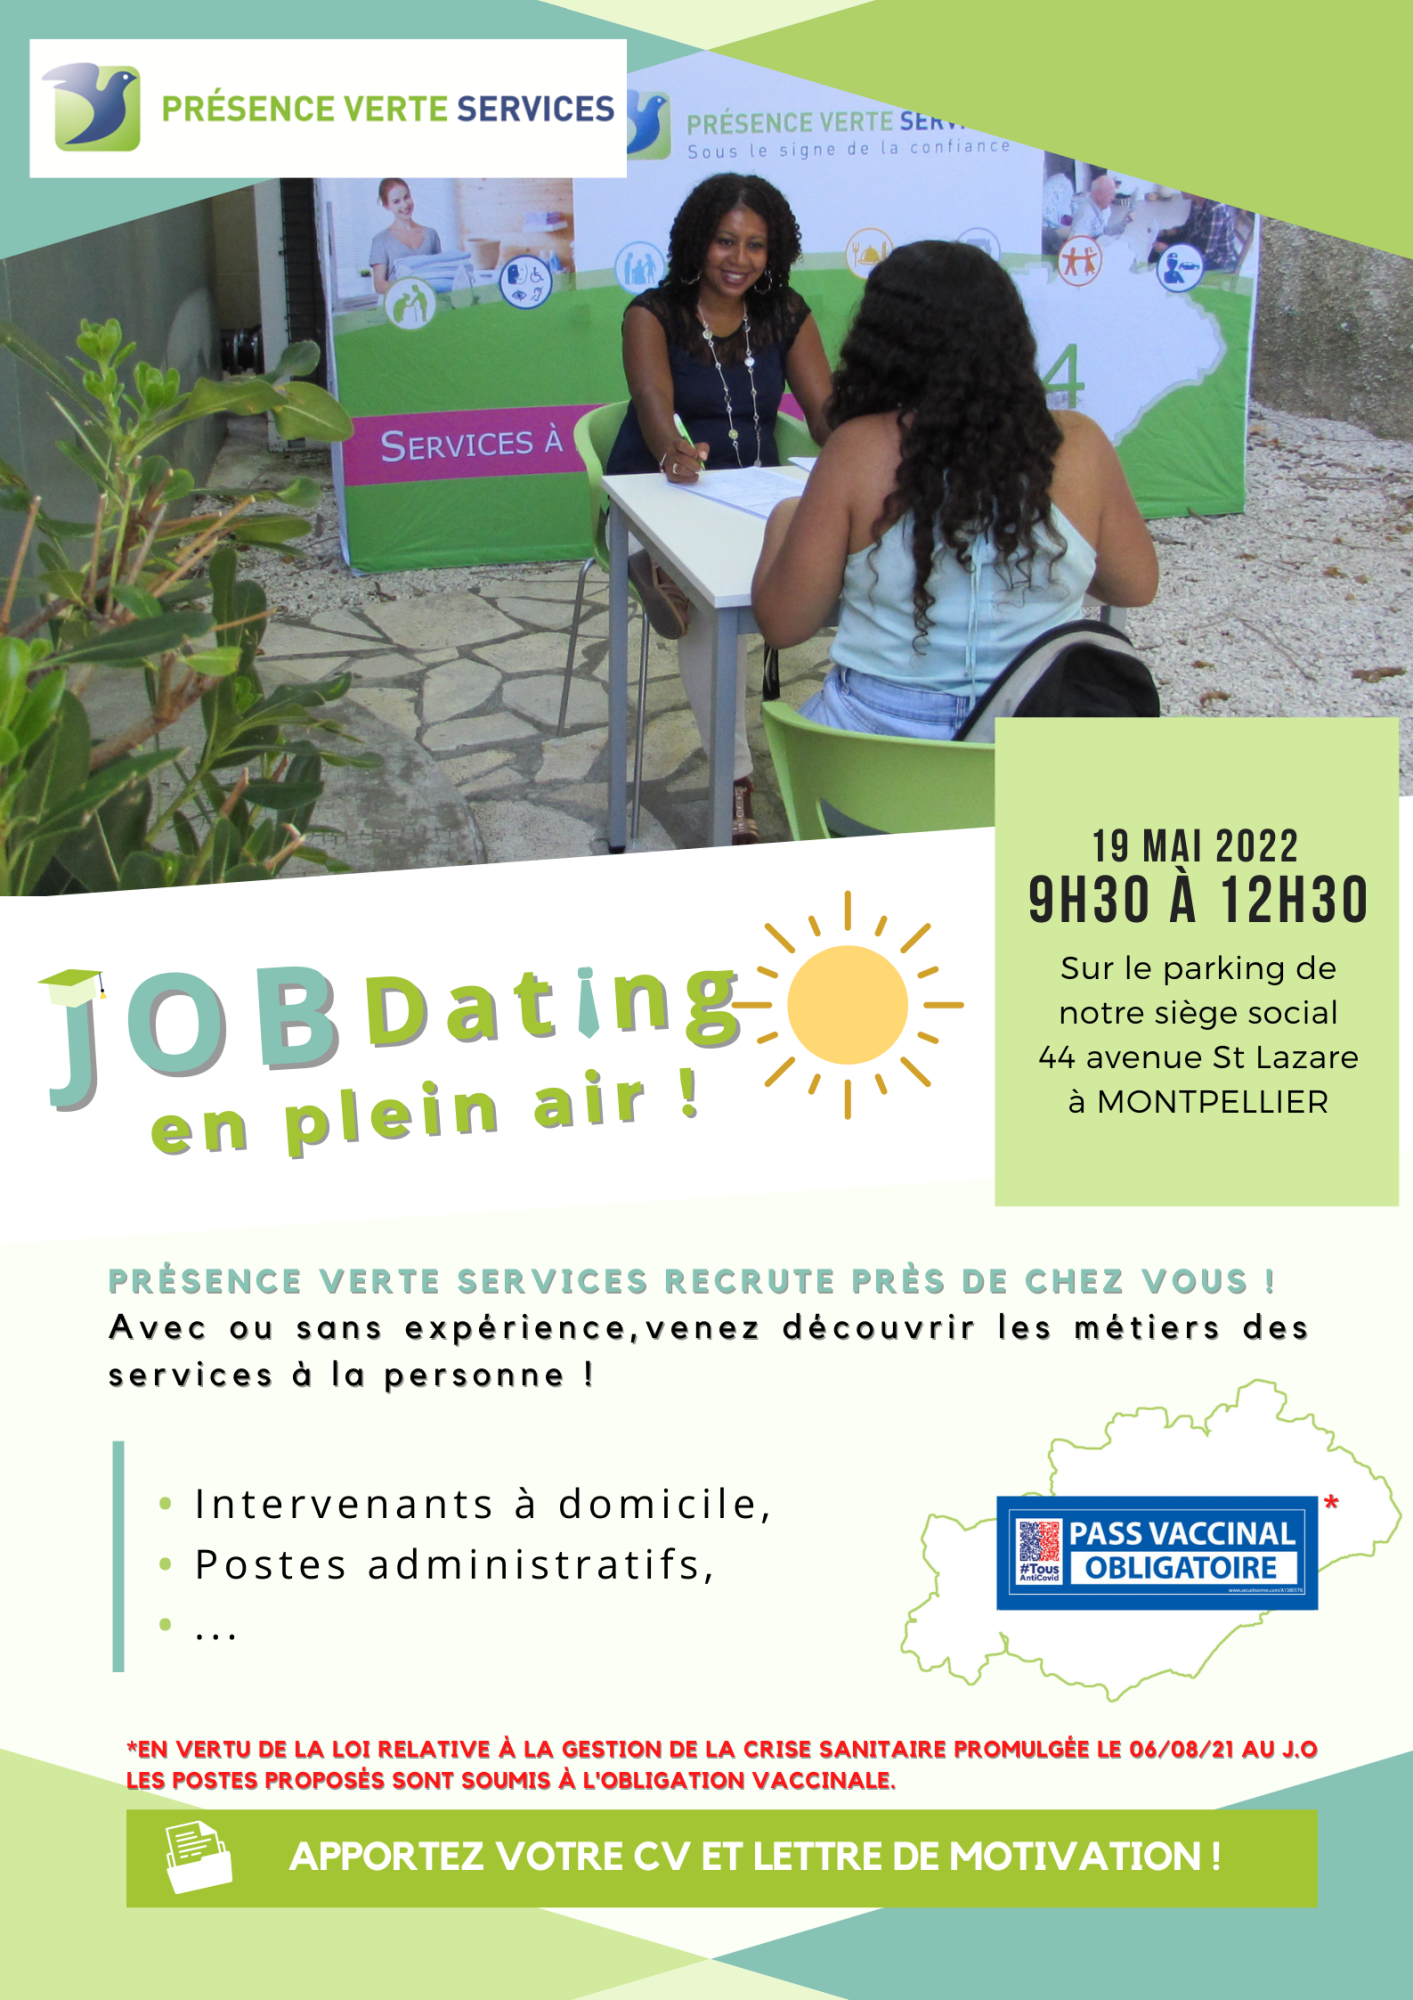 Montpellier - Rendez-vous le 19 mai pour une journée de recrutement !